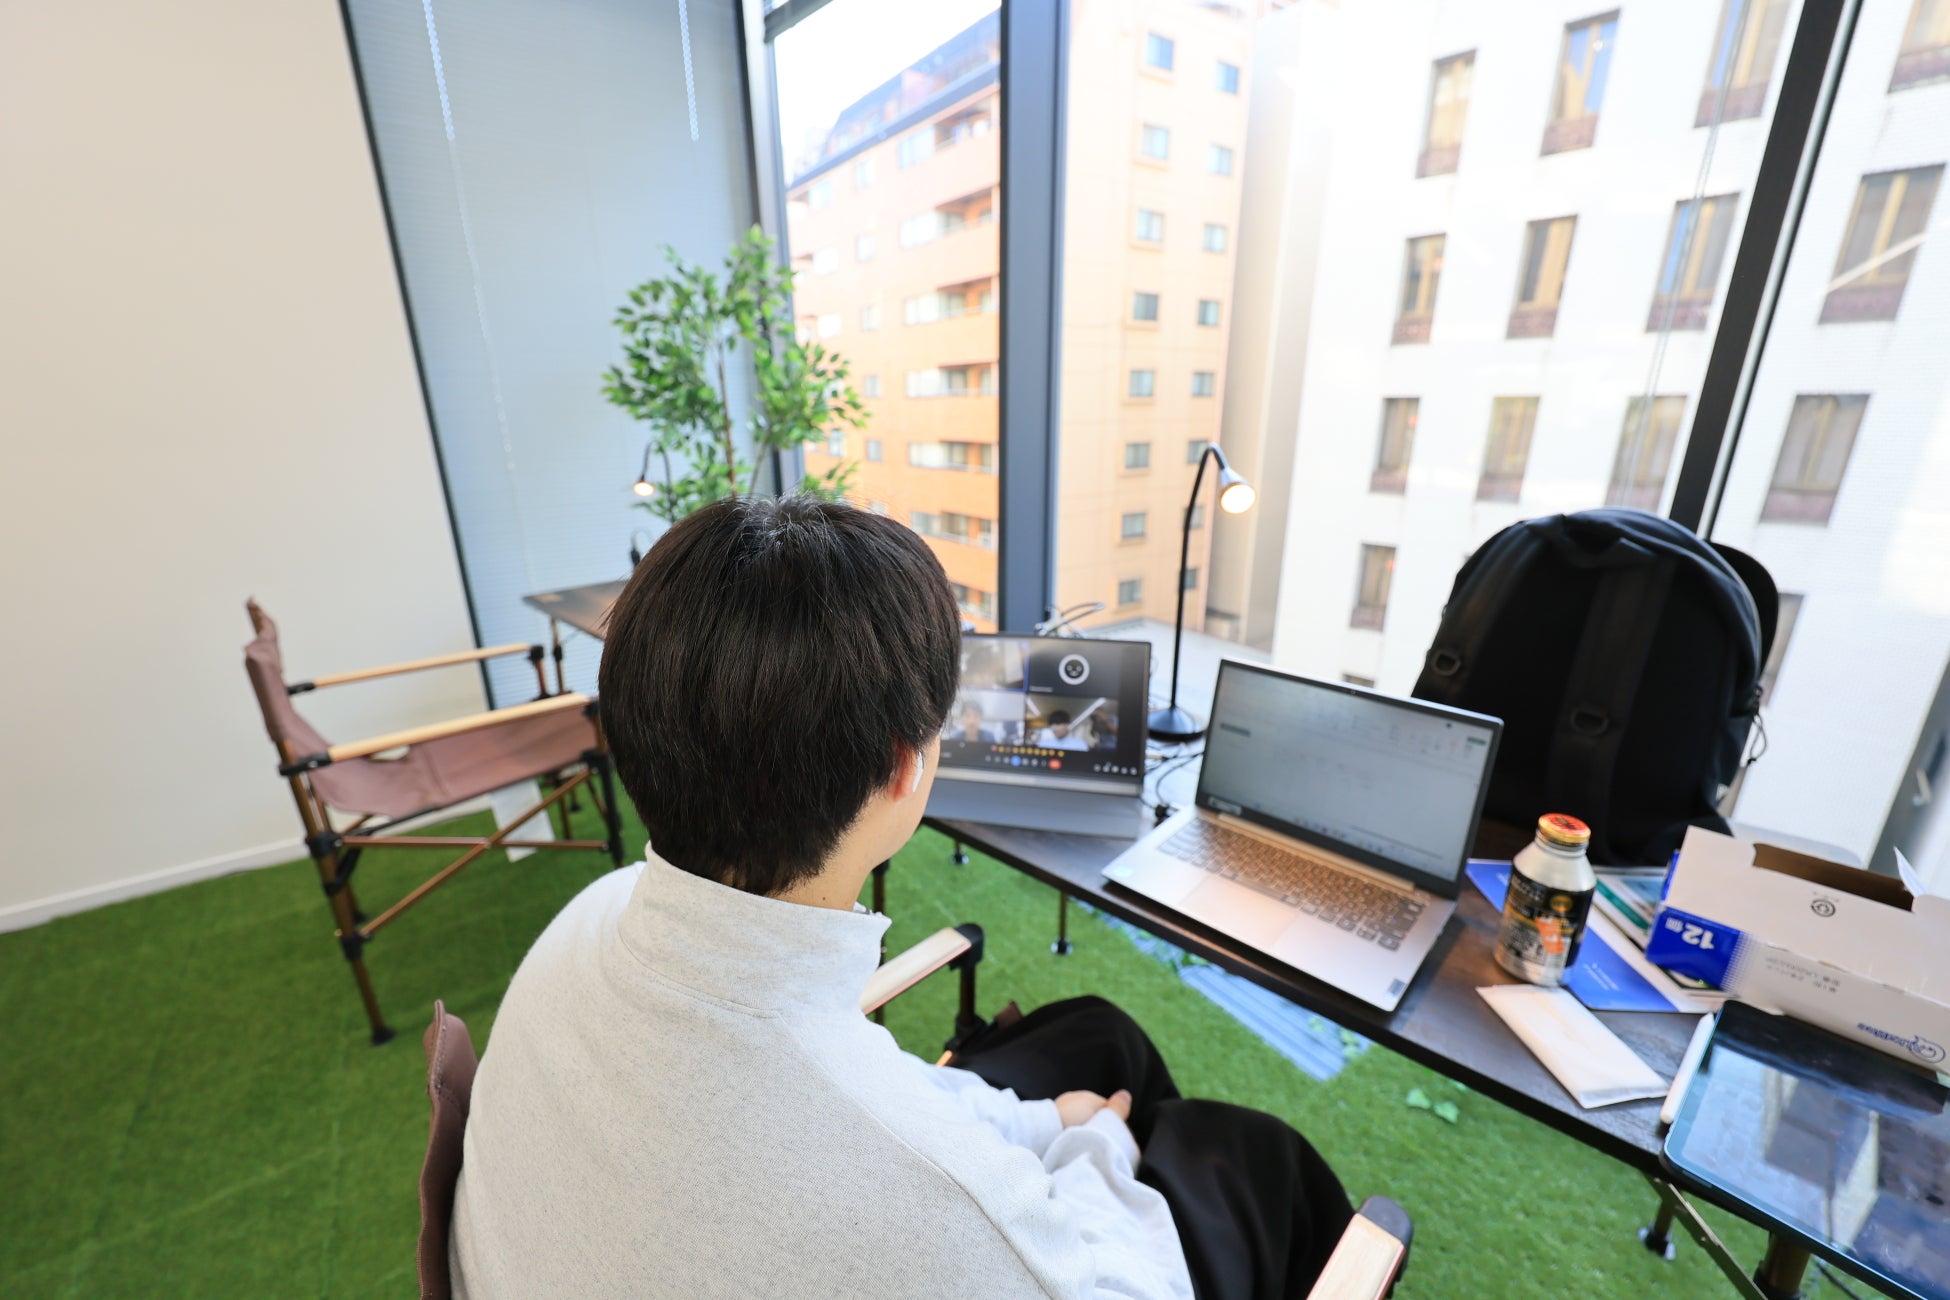 アウトドアファニチャーを使ってオフィスの空室や施設の空き空間を有効活用する「Camping Office Project」の試験運用を11月より開始のサブ画像5